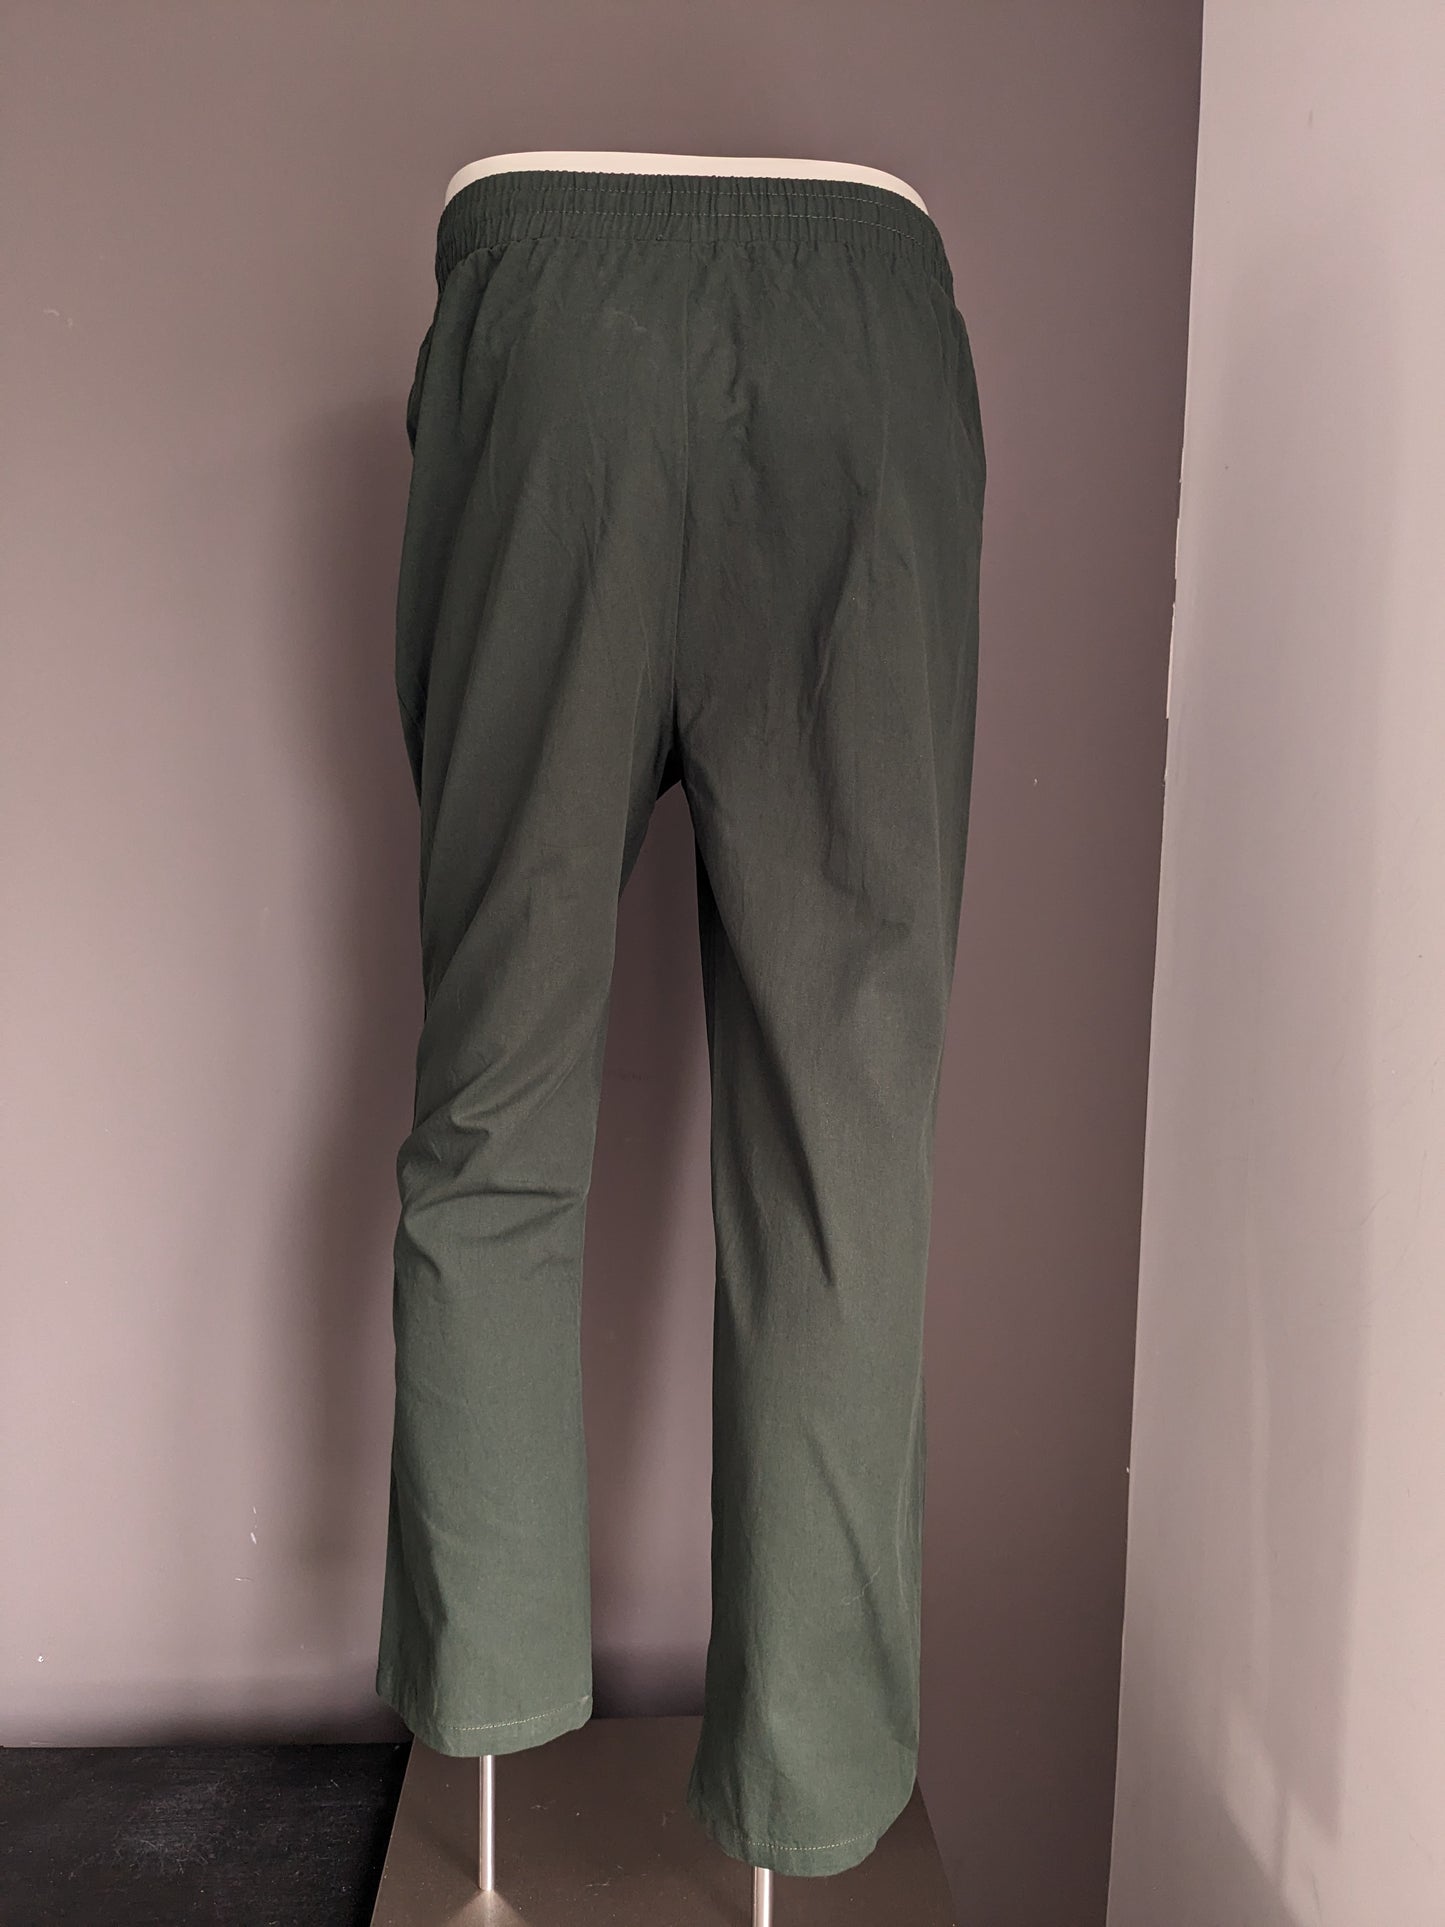 Pantalones casuales sin marca con banda elástica. Verde color. Tamaño